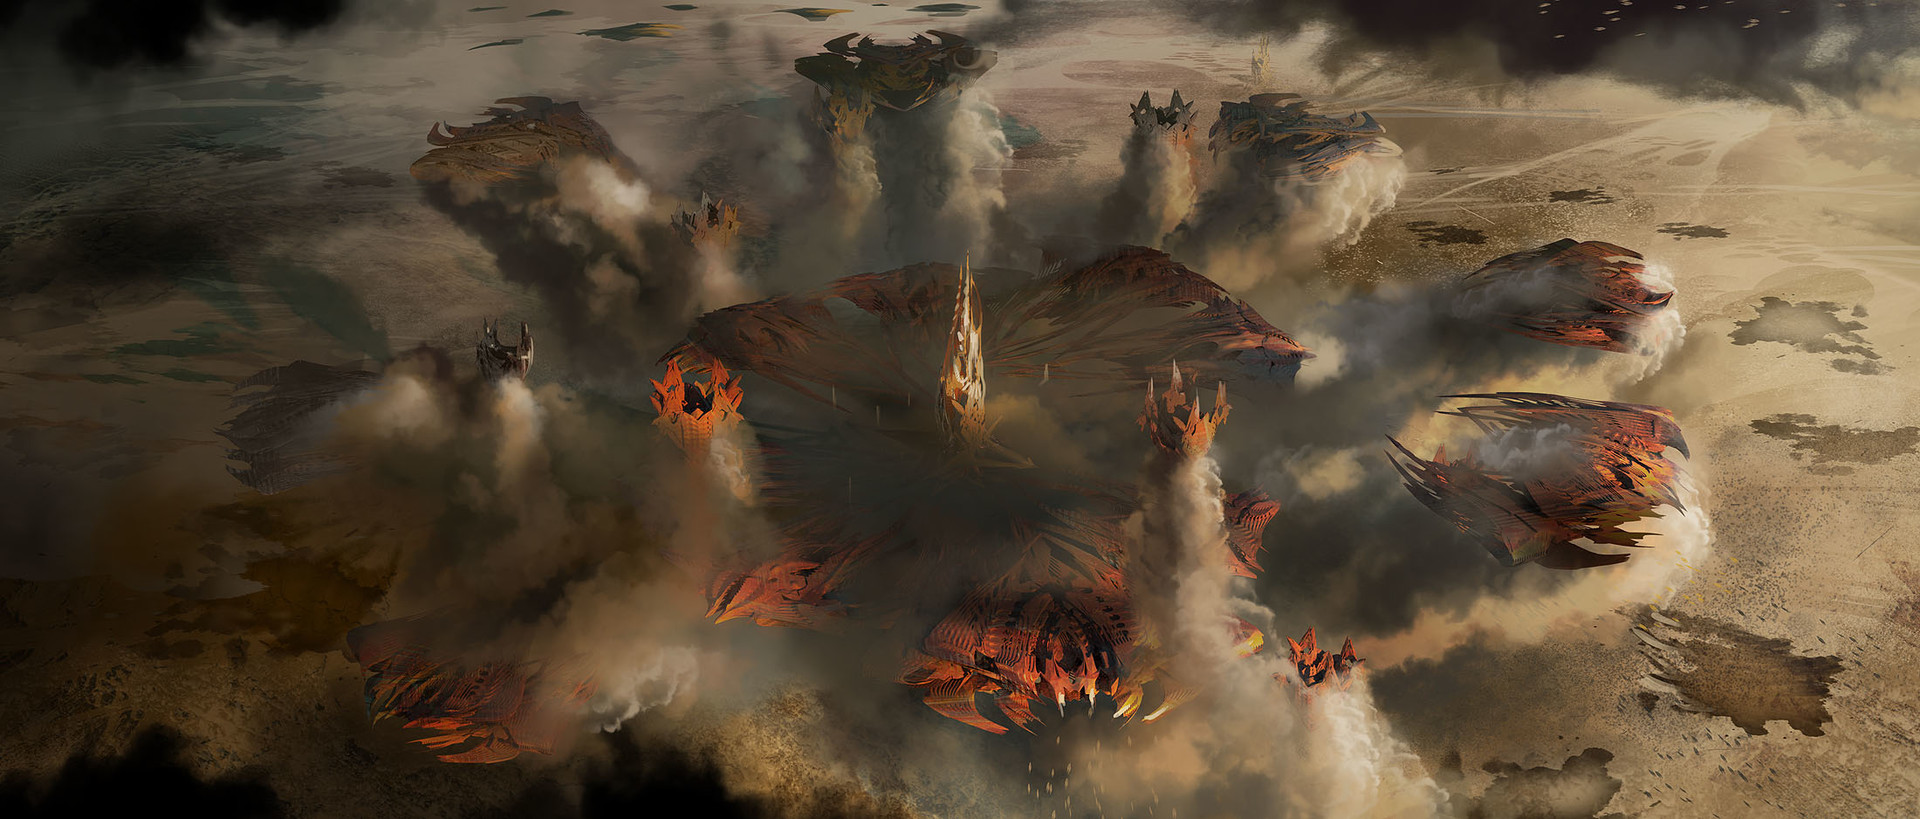 电影 Ender's Game 概念艺术作品-David Levy-7.jpg